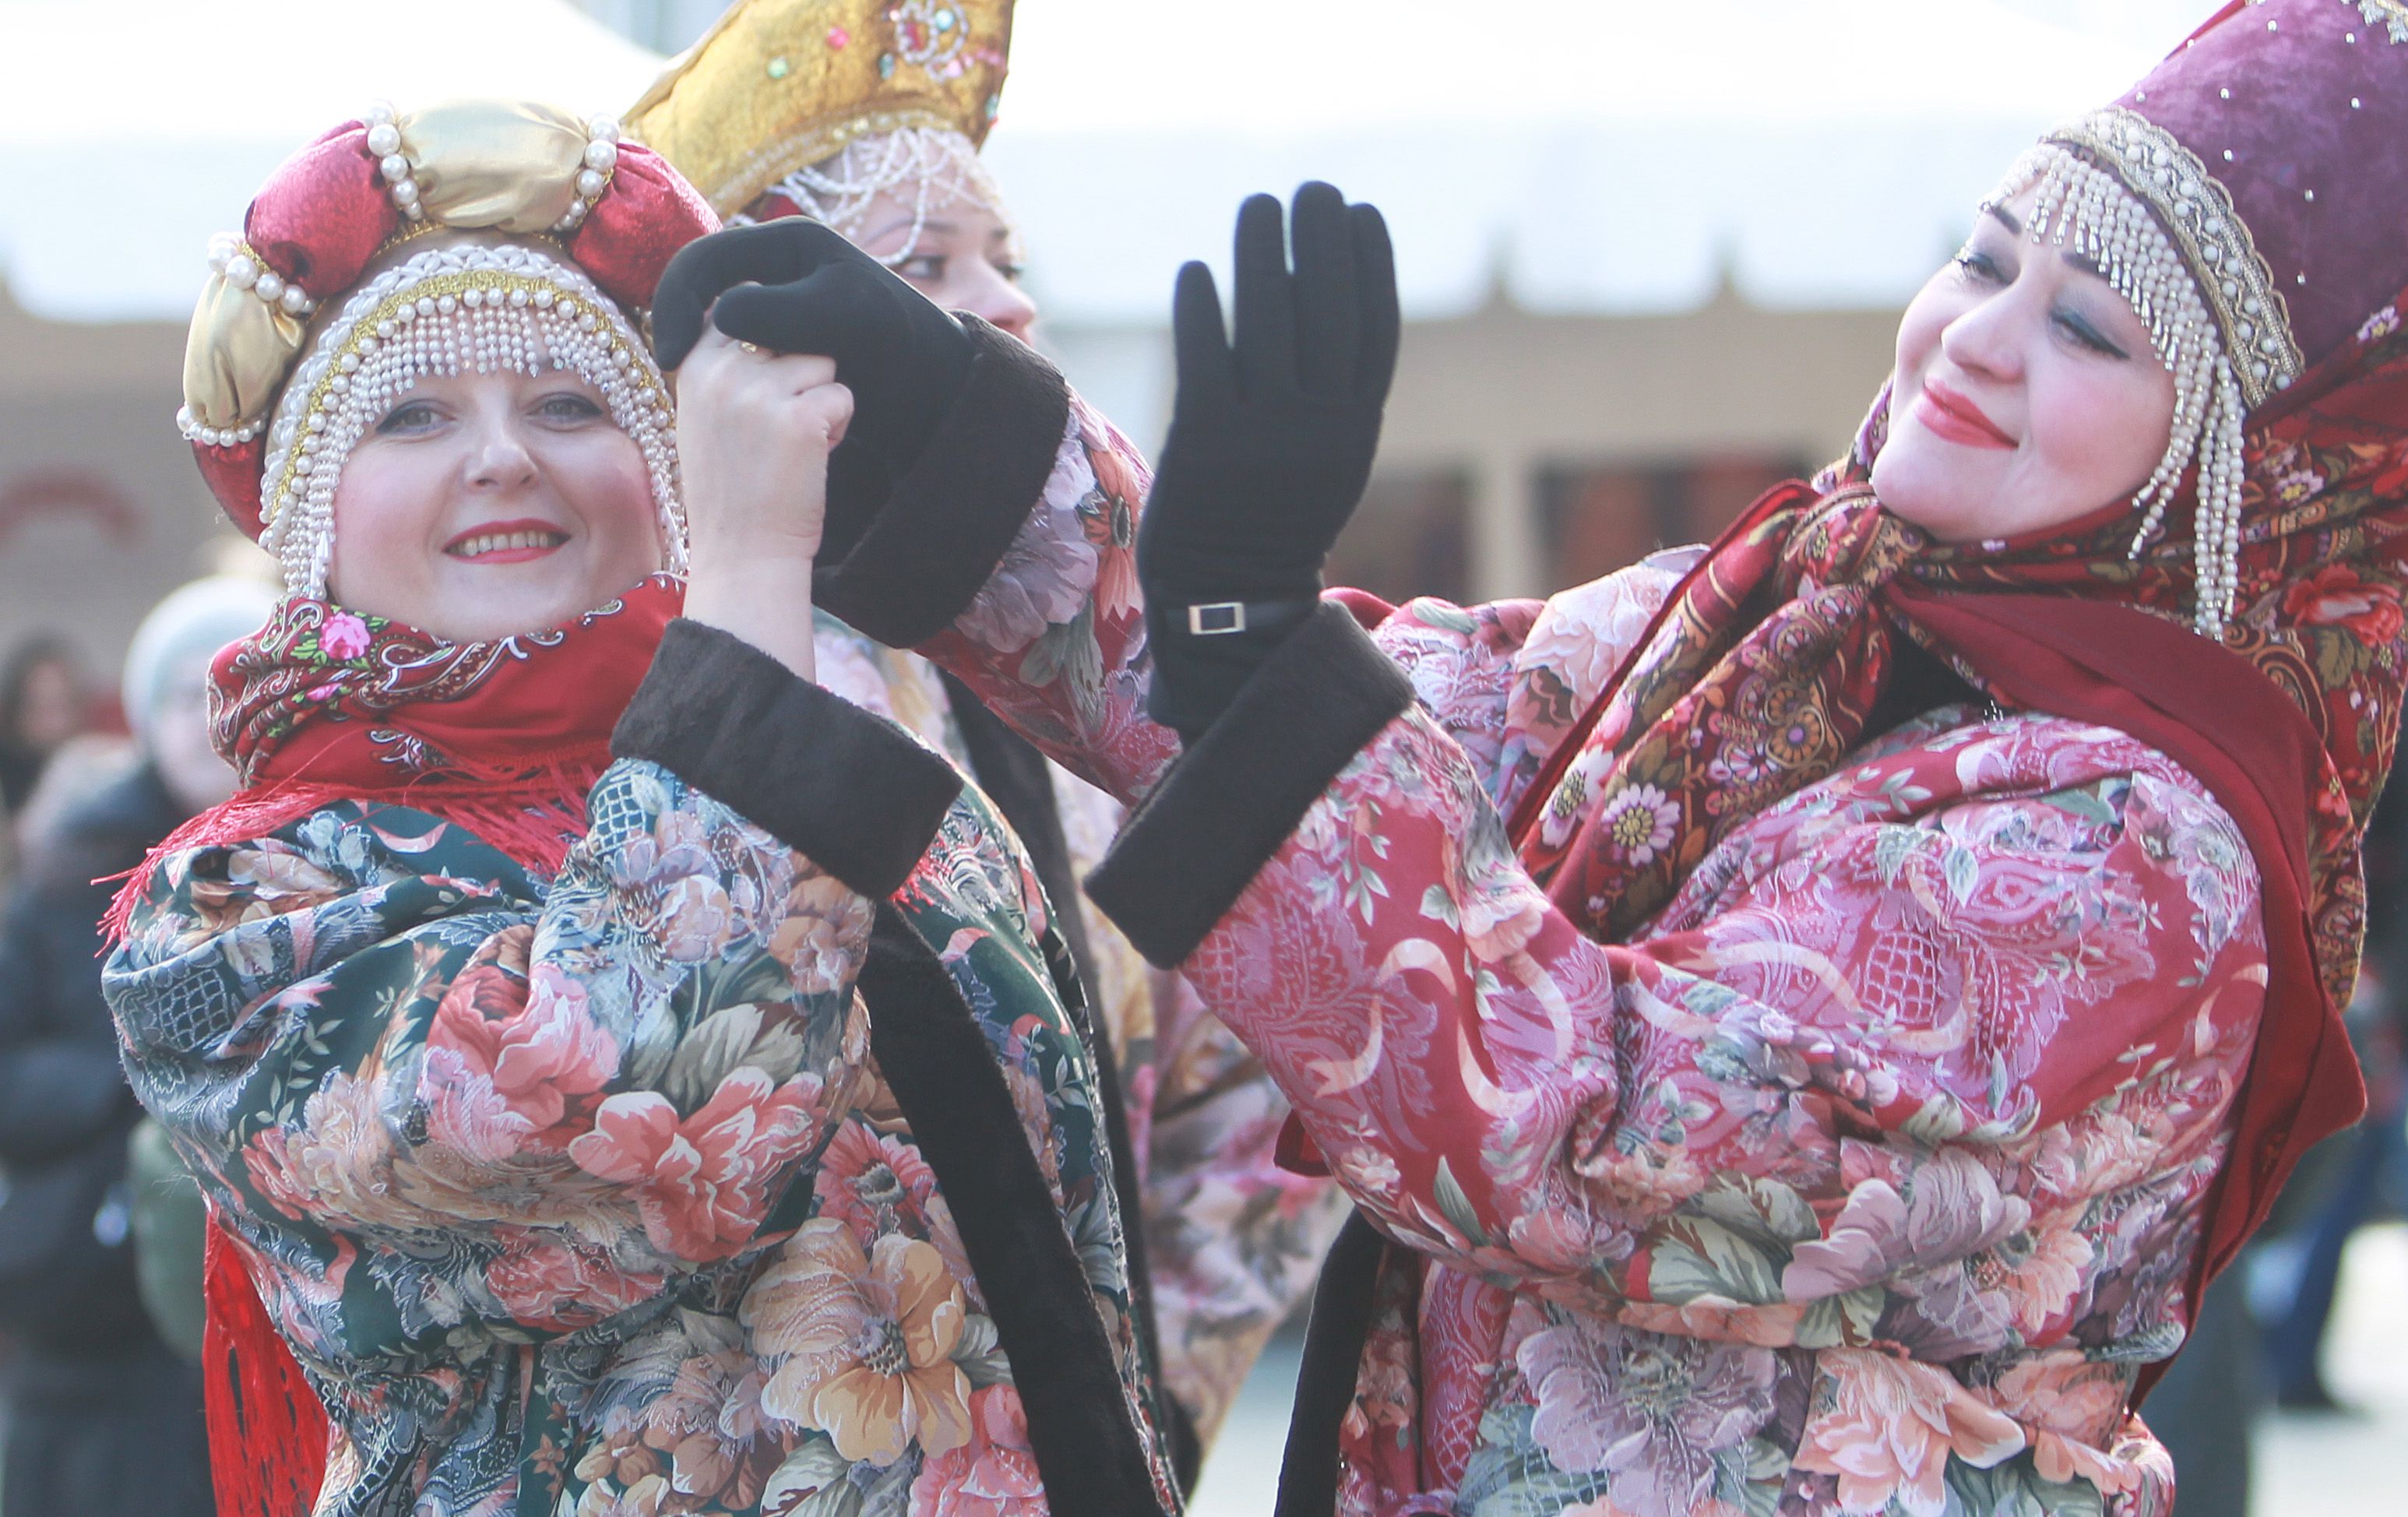 Участников фестиваля научат делать куклы-обереги. Фото: Наталия Нечаева, «Вечерняя Москва»